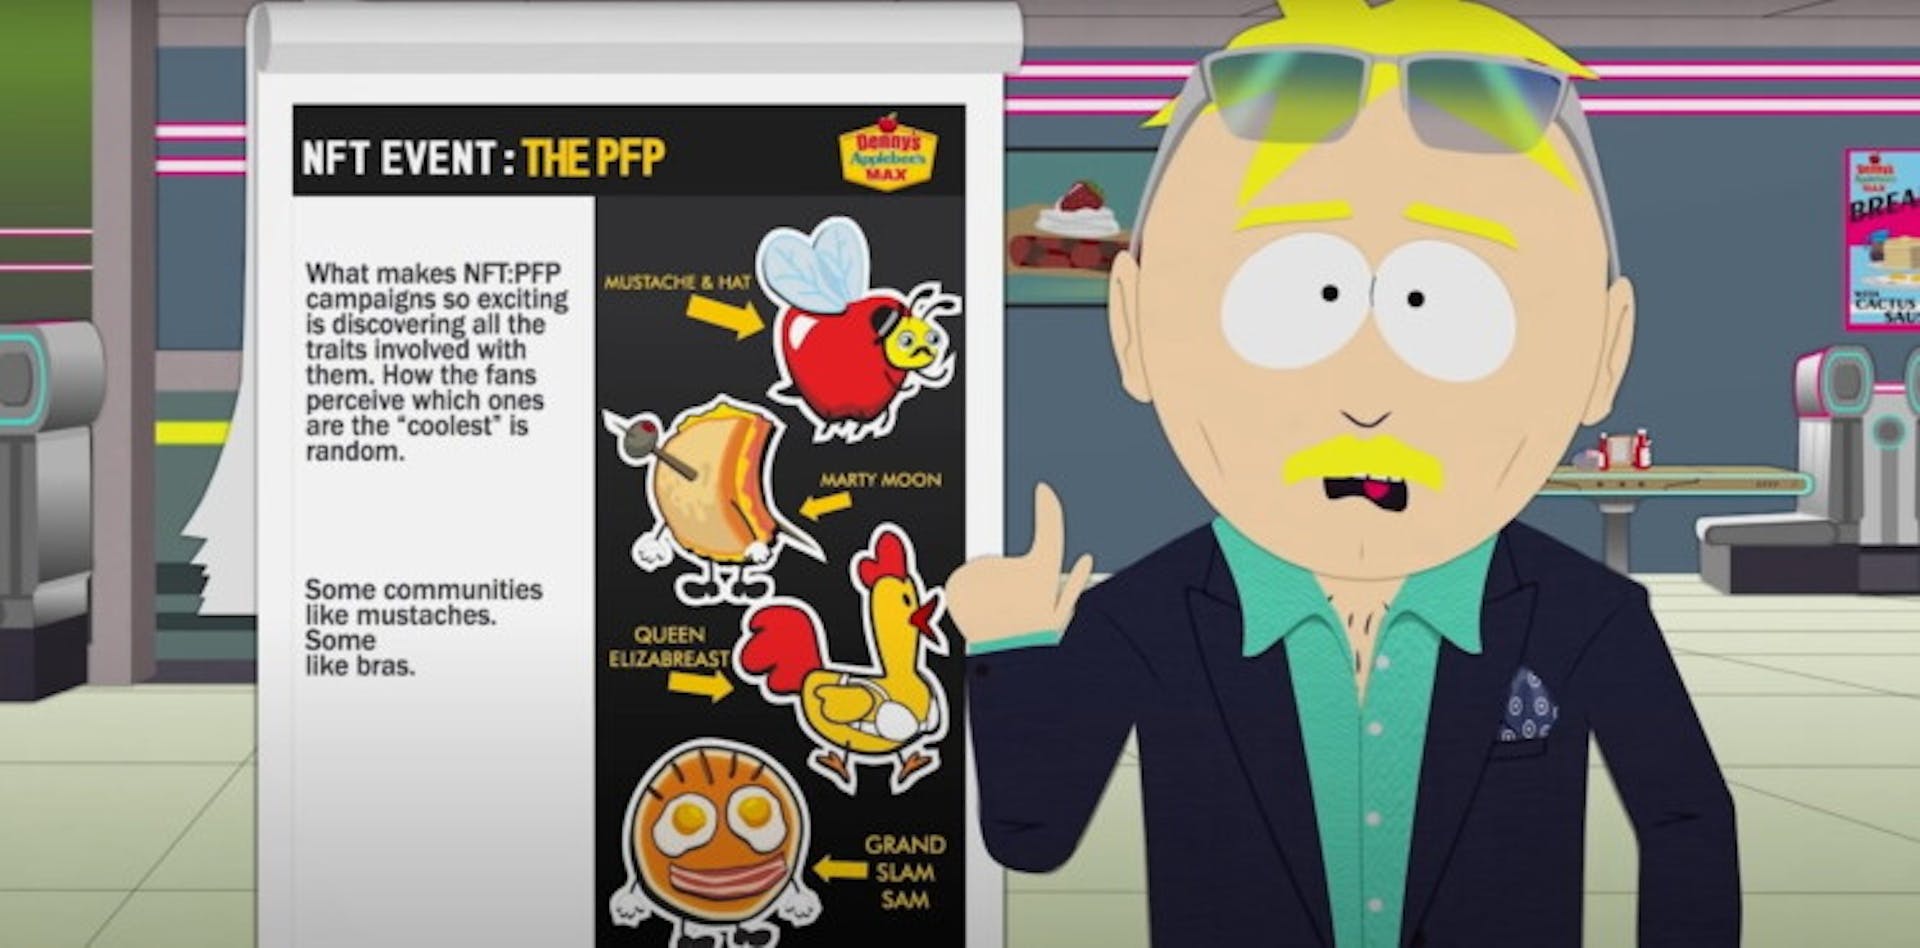 Leopold “Butters” Stotch convence uma rede de fast food a lançar o NFT. Um still de um episódio especial de "South Park"